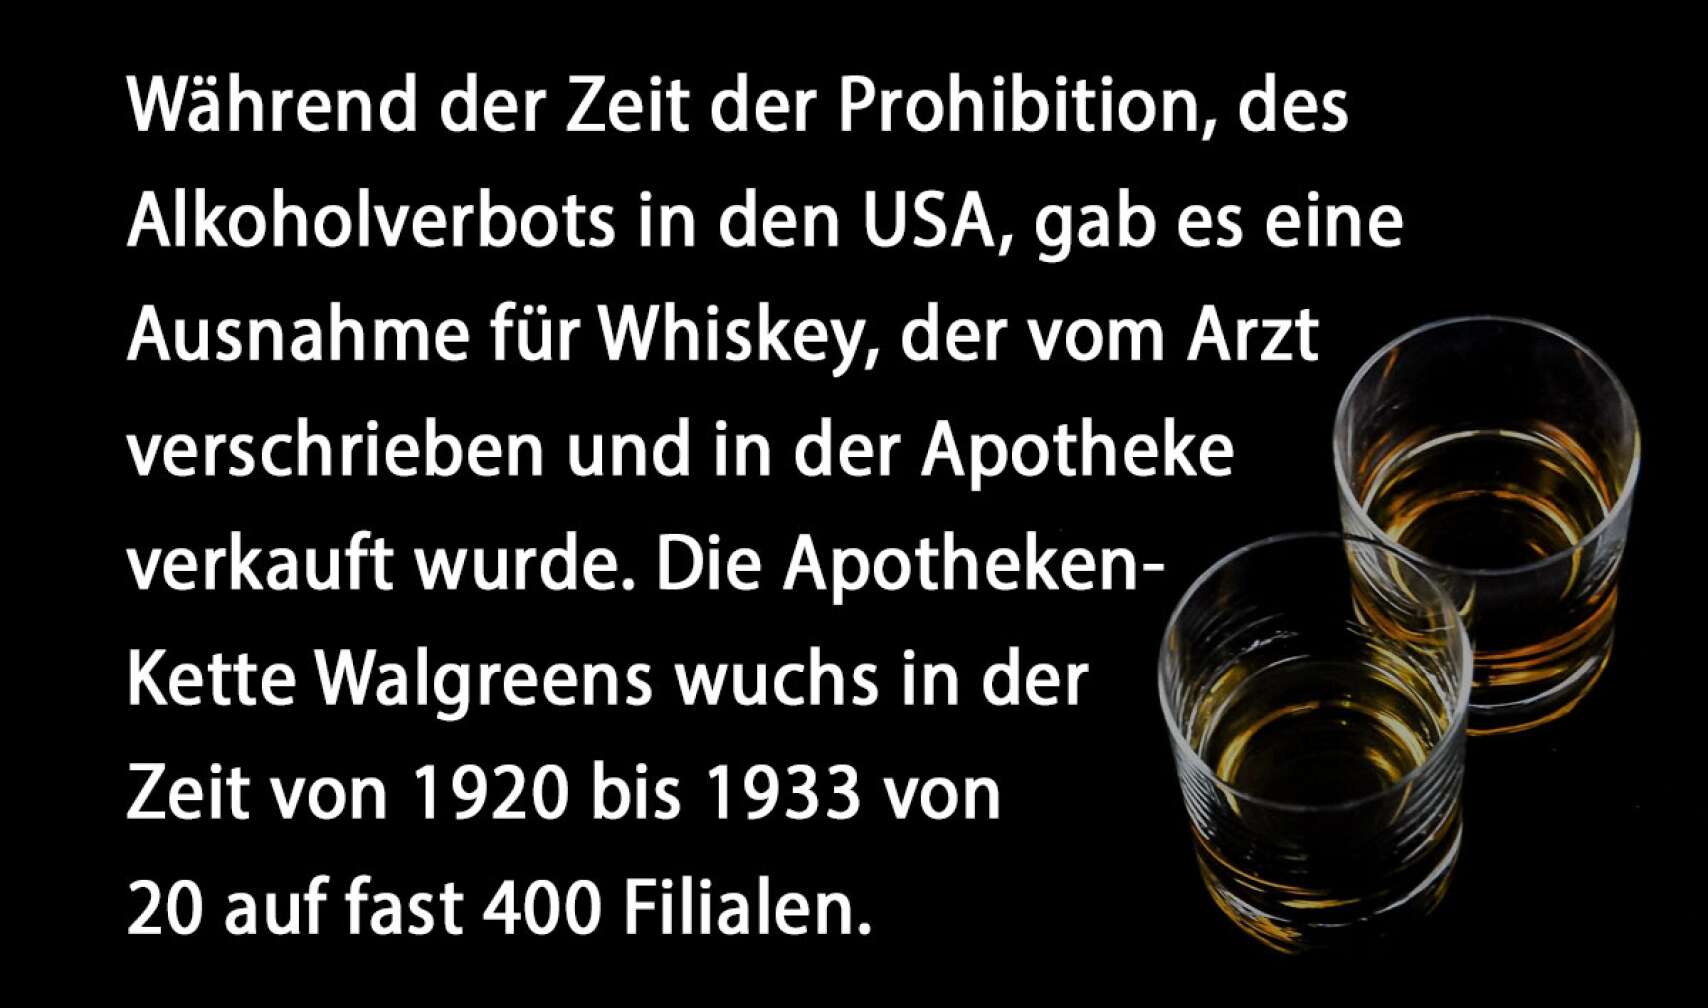 Während der Zeit der Prohibition, des Alkoholverbots in den USA, gab es eine Ausnahme für Whiskey, der vom Arzt verschrieben und in der Apotheke verkauft wurde. Die Apotheken-Kette Walgreens wuchs in der Zeit von 1920 bis 1933 von 20 auf fast 400 Filialen.